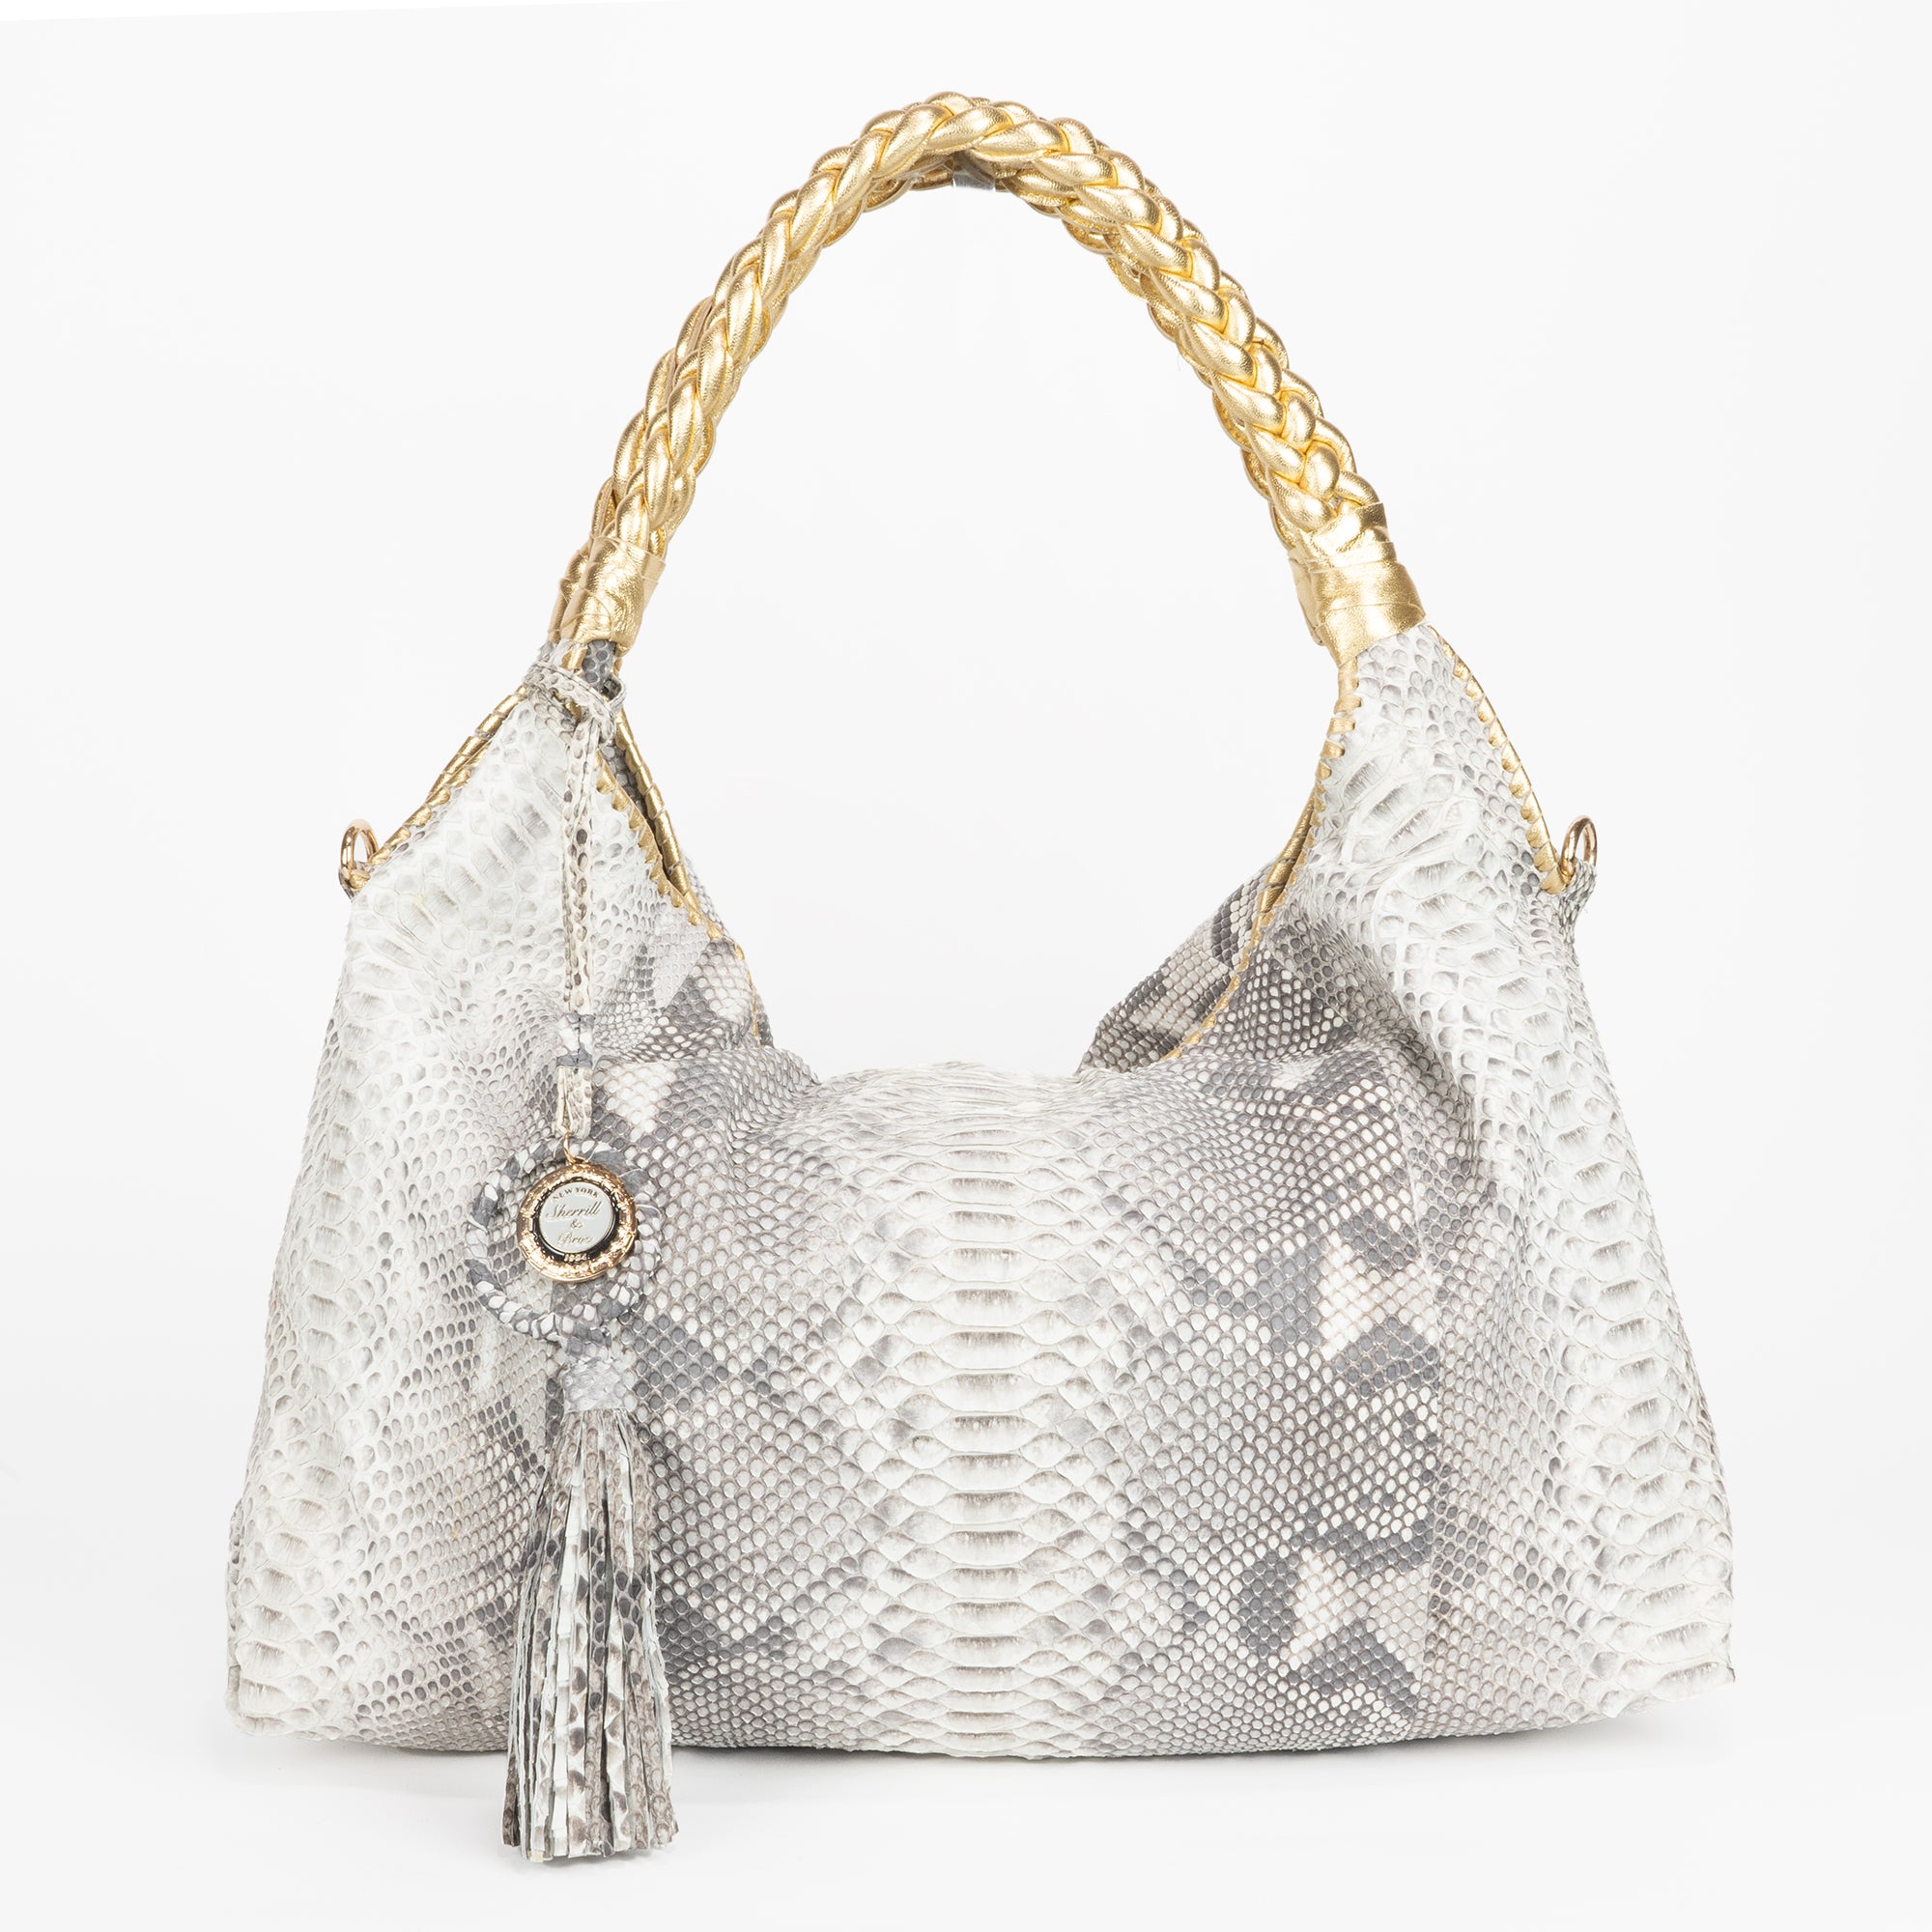 Gray and white python bag, hand handle